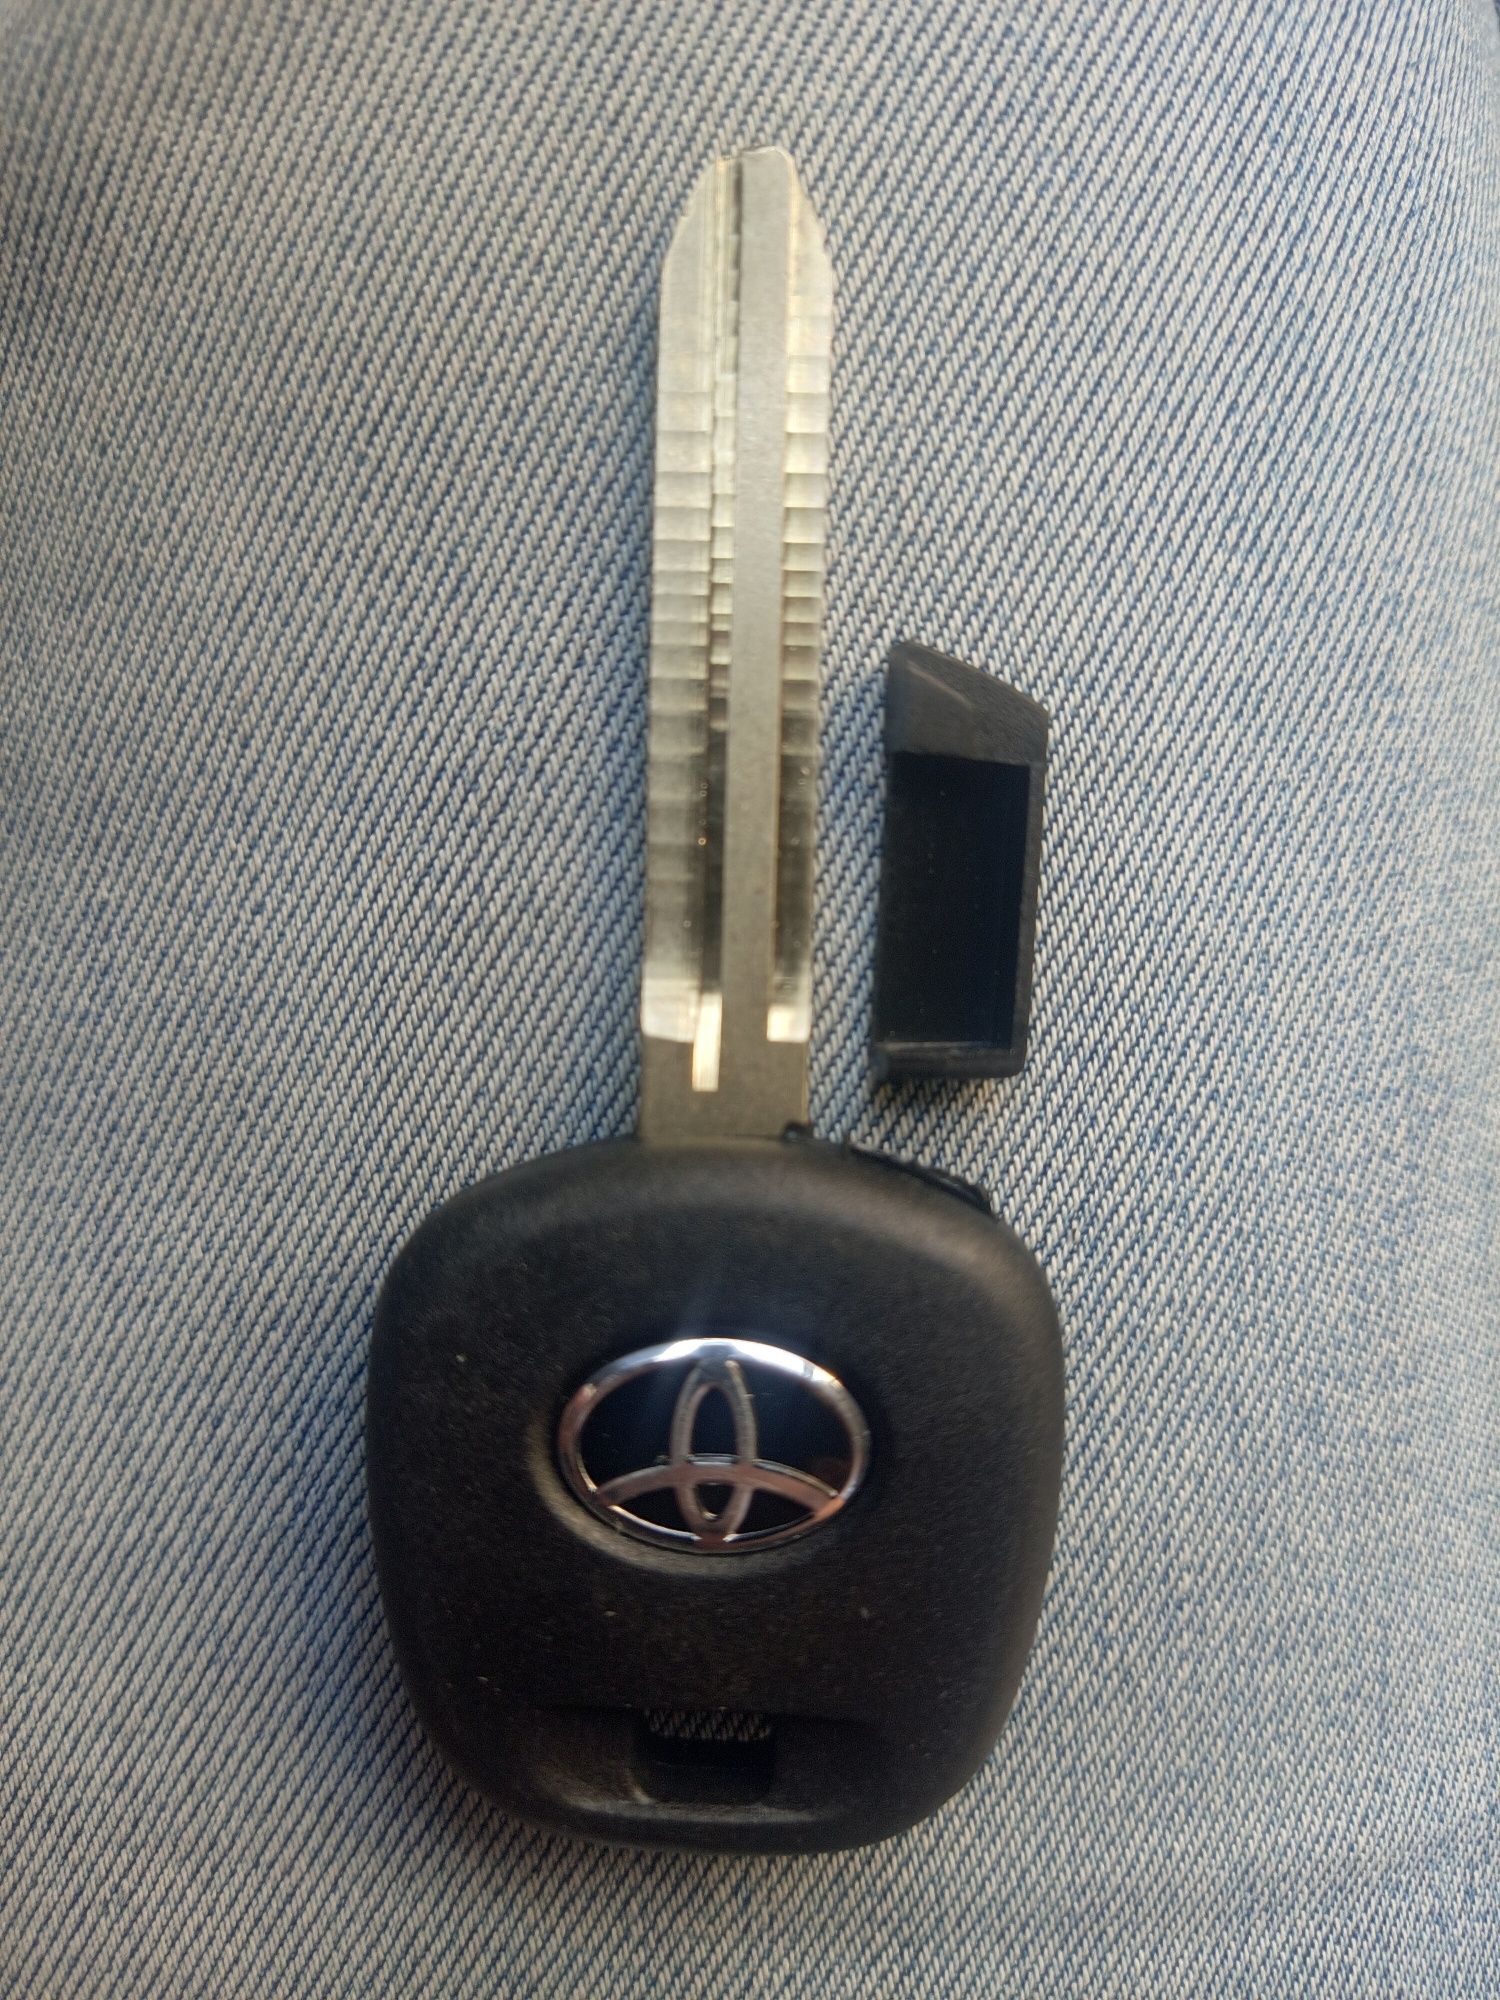 Мастер ключ Toyota TOY 43 под чип( транспондер)